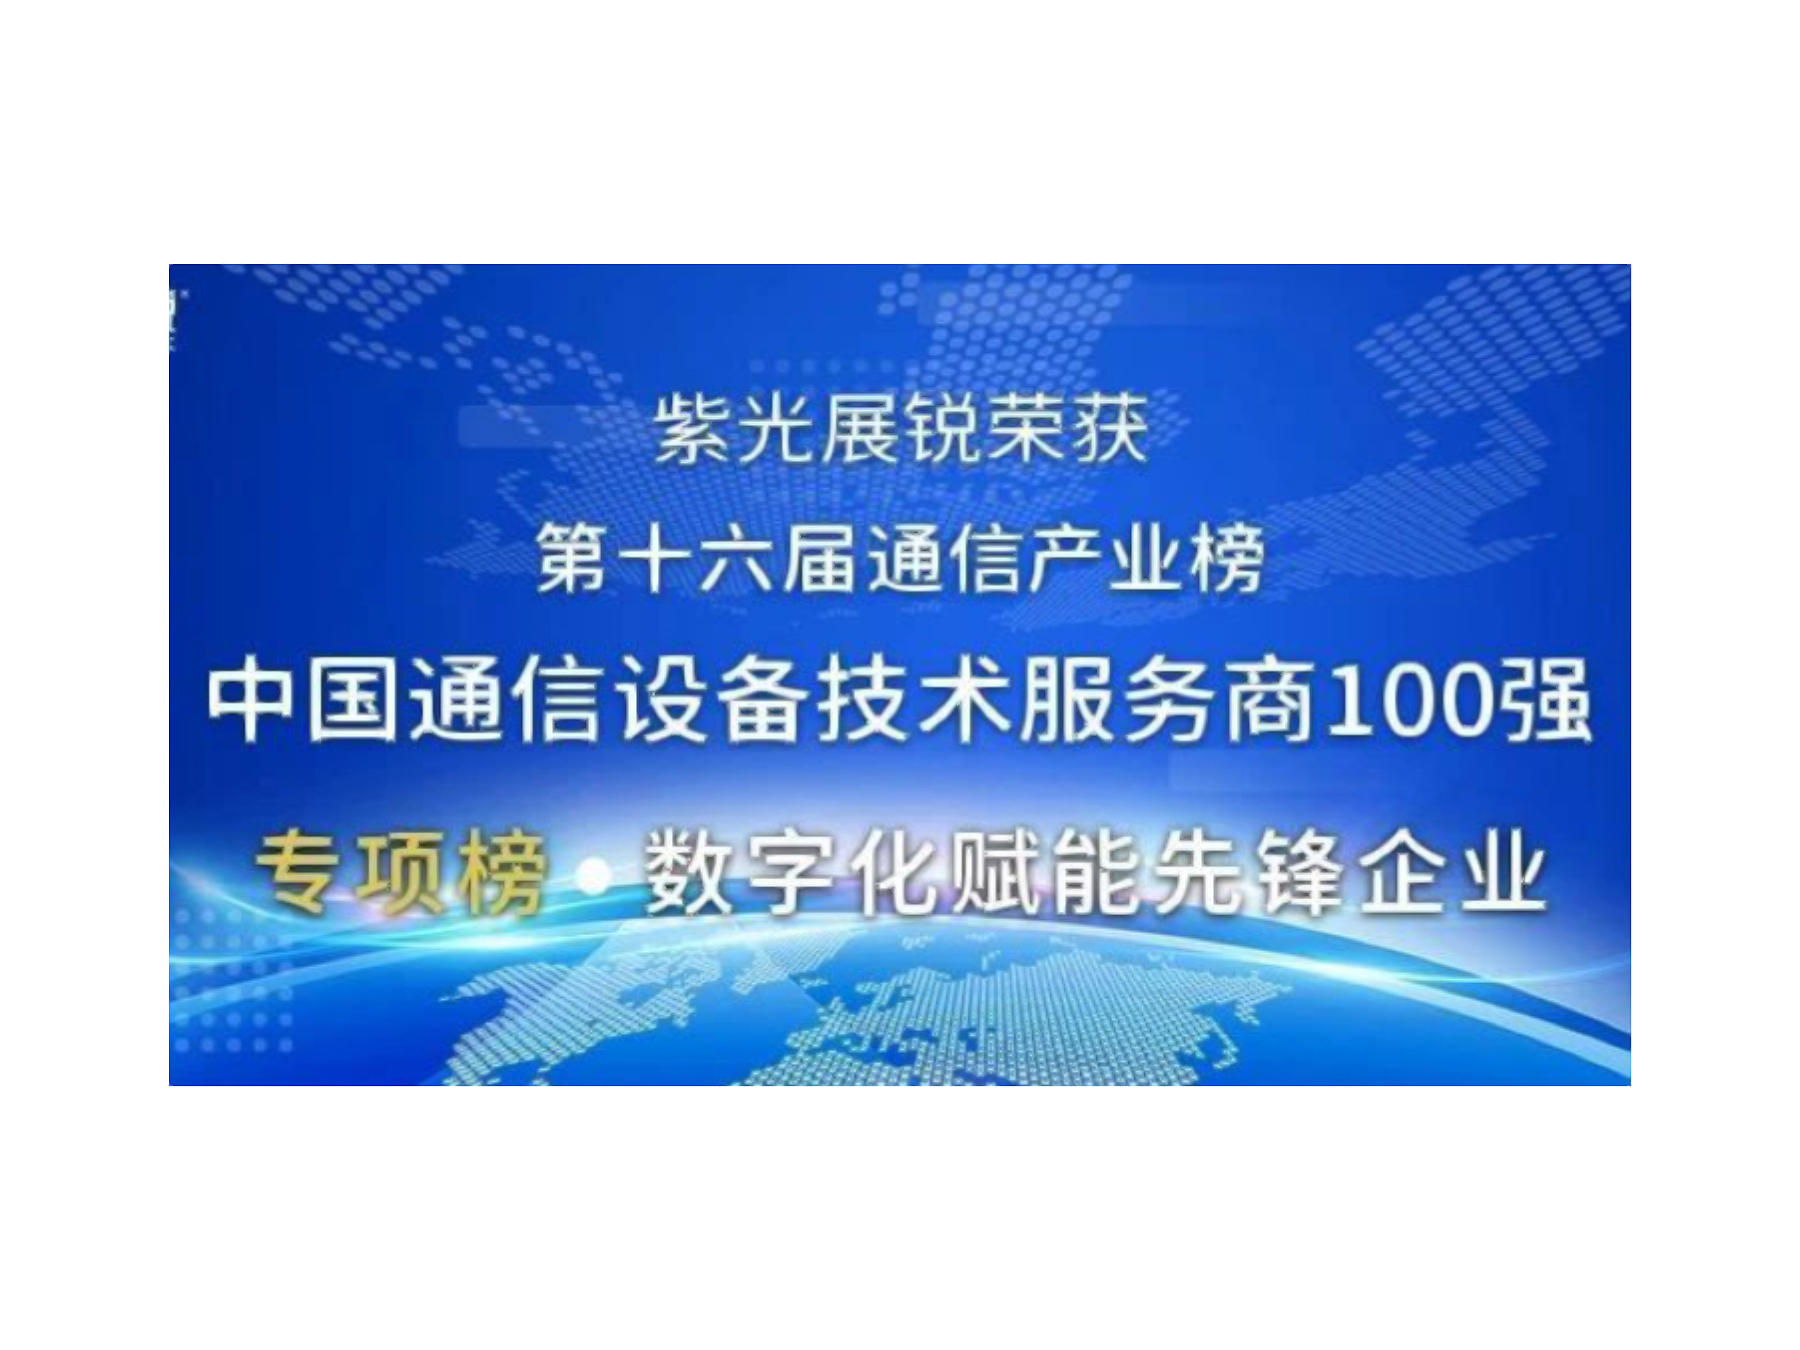 第十六届中国通信产业榜发布 紫光展锐荣获两项大奖